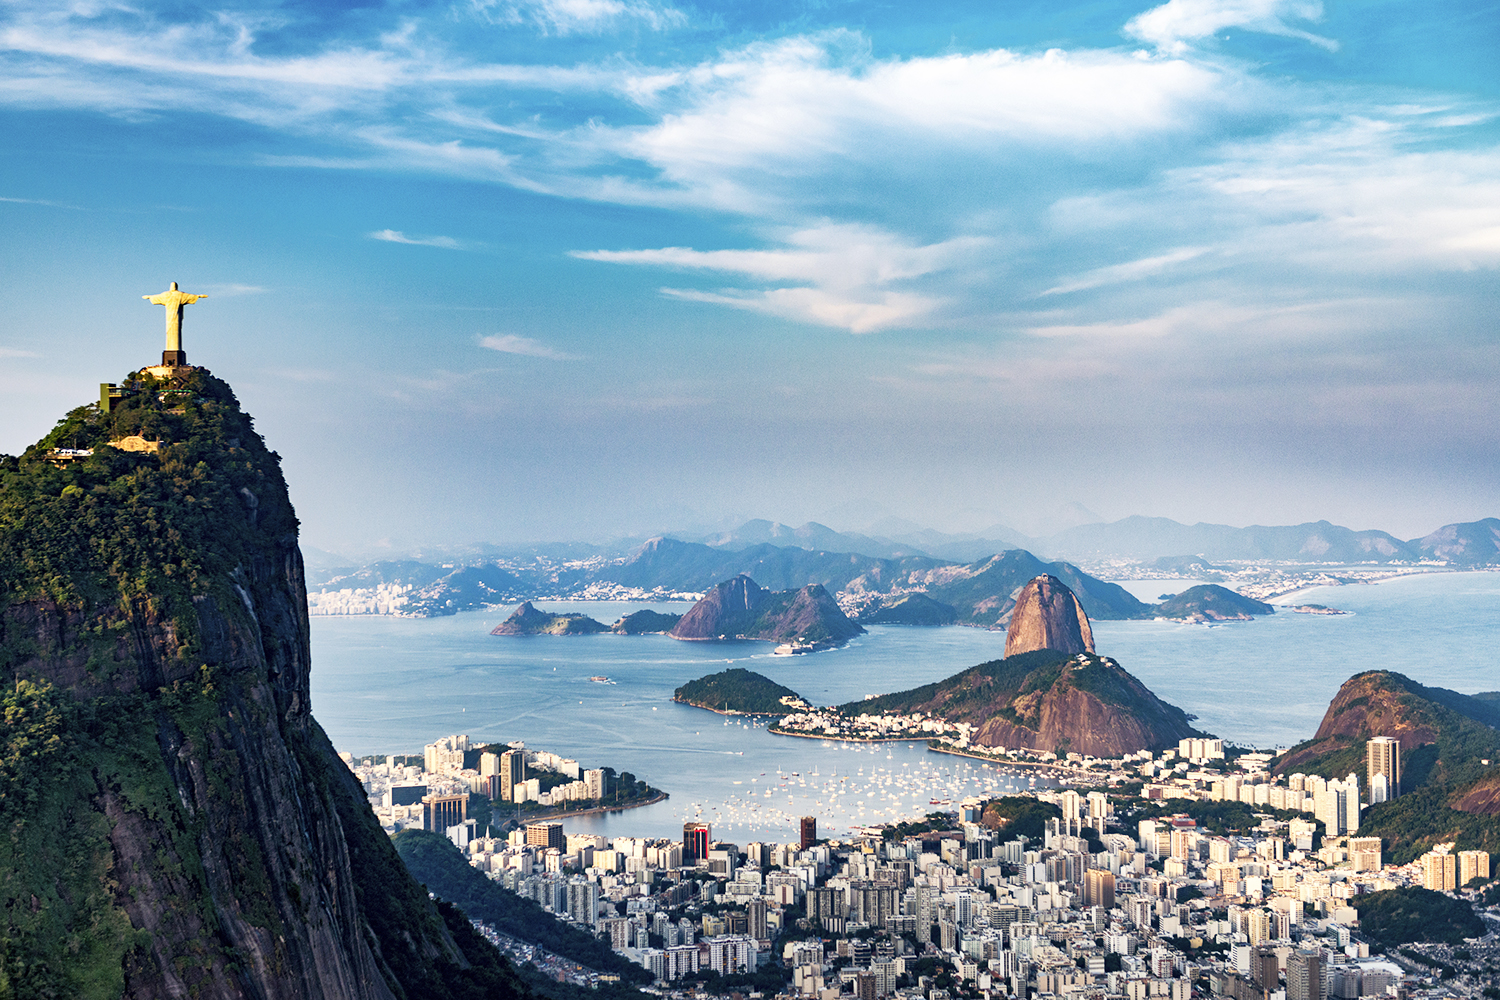 A cidade do Rio de Janeiro (RJ), foi reconhecida como Patrimônio Mundial da Humanidade pela UNESCO, em 2012, com as suas mais belas vistas, tais como o Morro do Corcovado, a estátua de Cristo Redentor, e suas áreas urbanas. A cidade sediará os Jogos Olímpicos em agosto deste ano